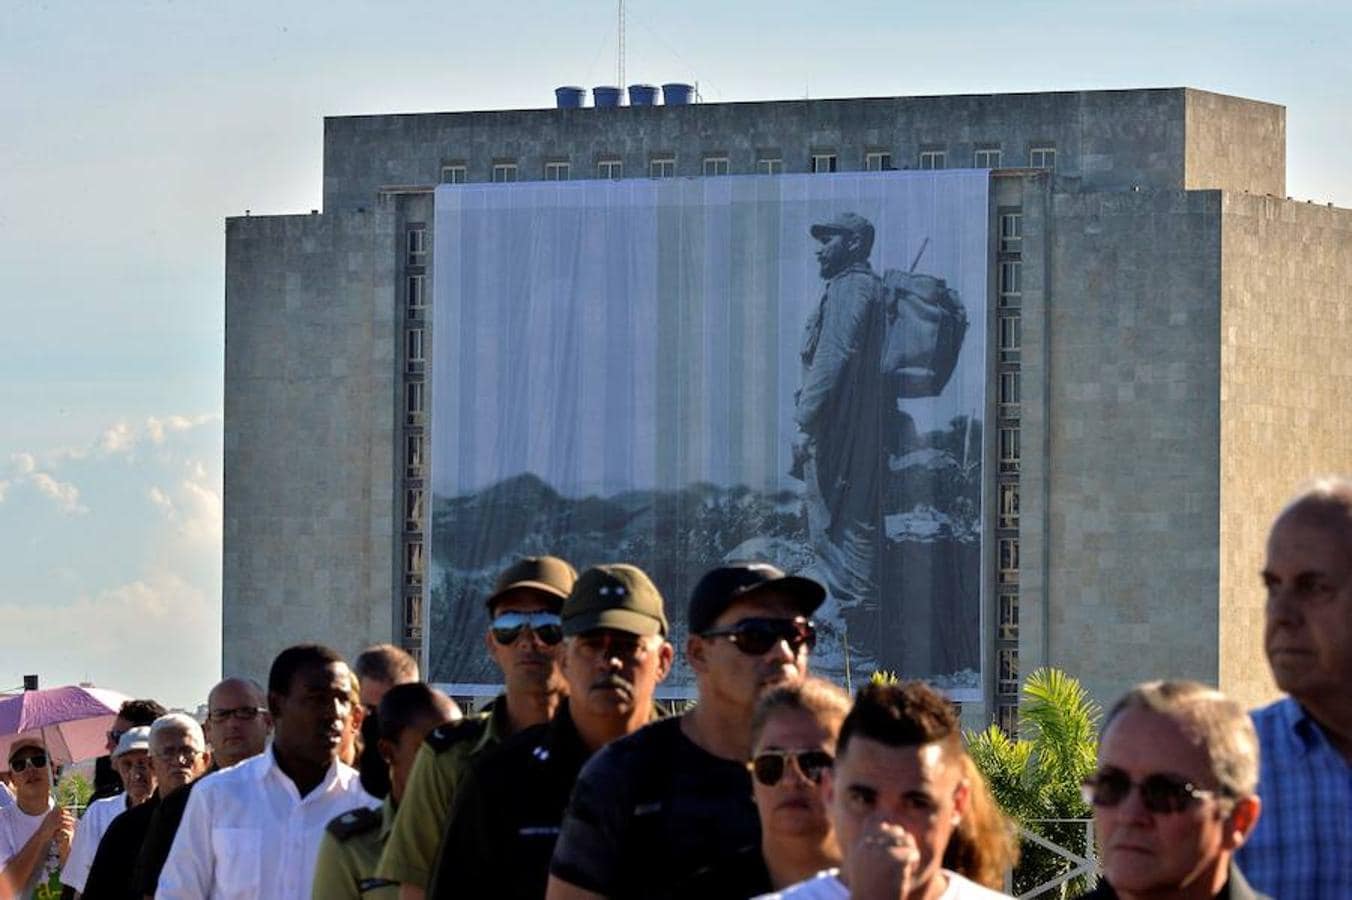 El acto en el Memorial José Martí supone el pistoletazo de salida de una semana de duelo en Cuba por la muerte el viernes